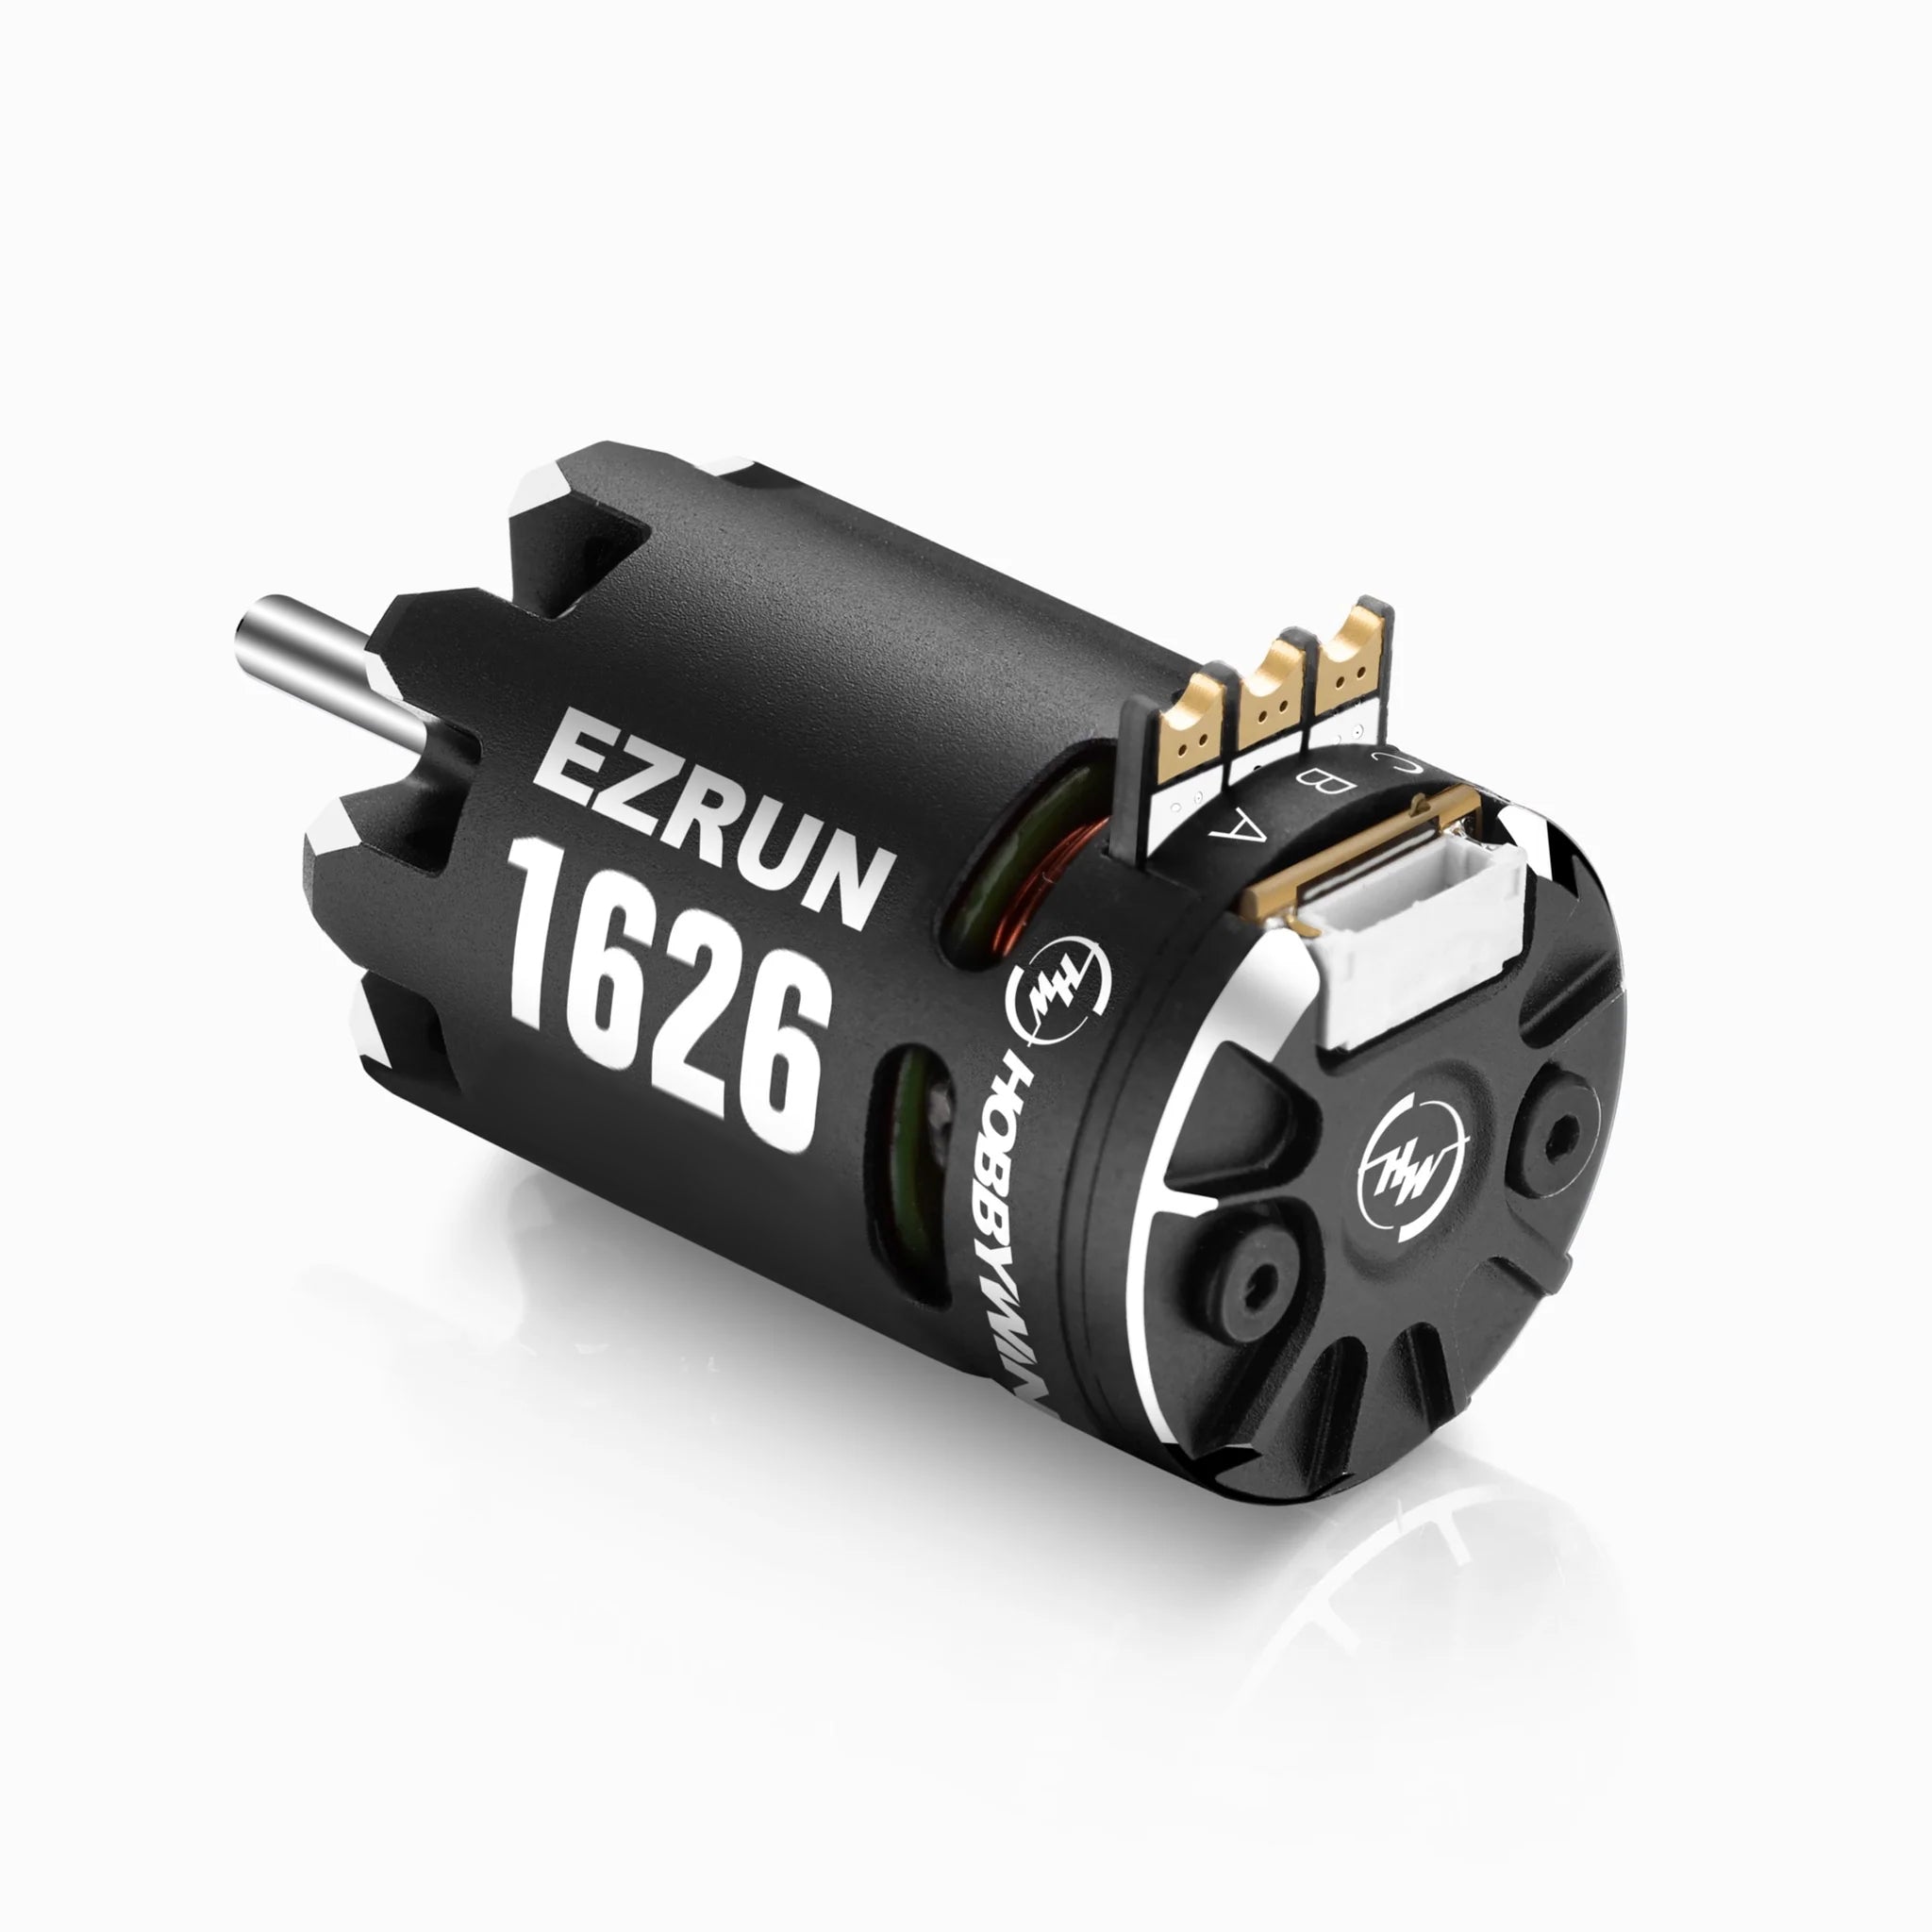 Hobbywing - EZRun 1626 Sensored Brushless Motor (5000Kv)